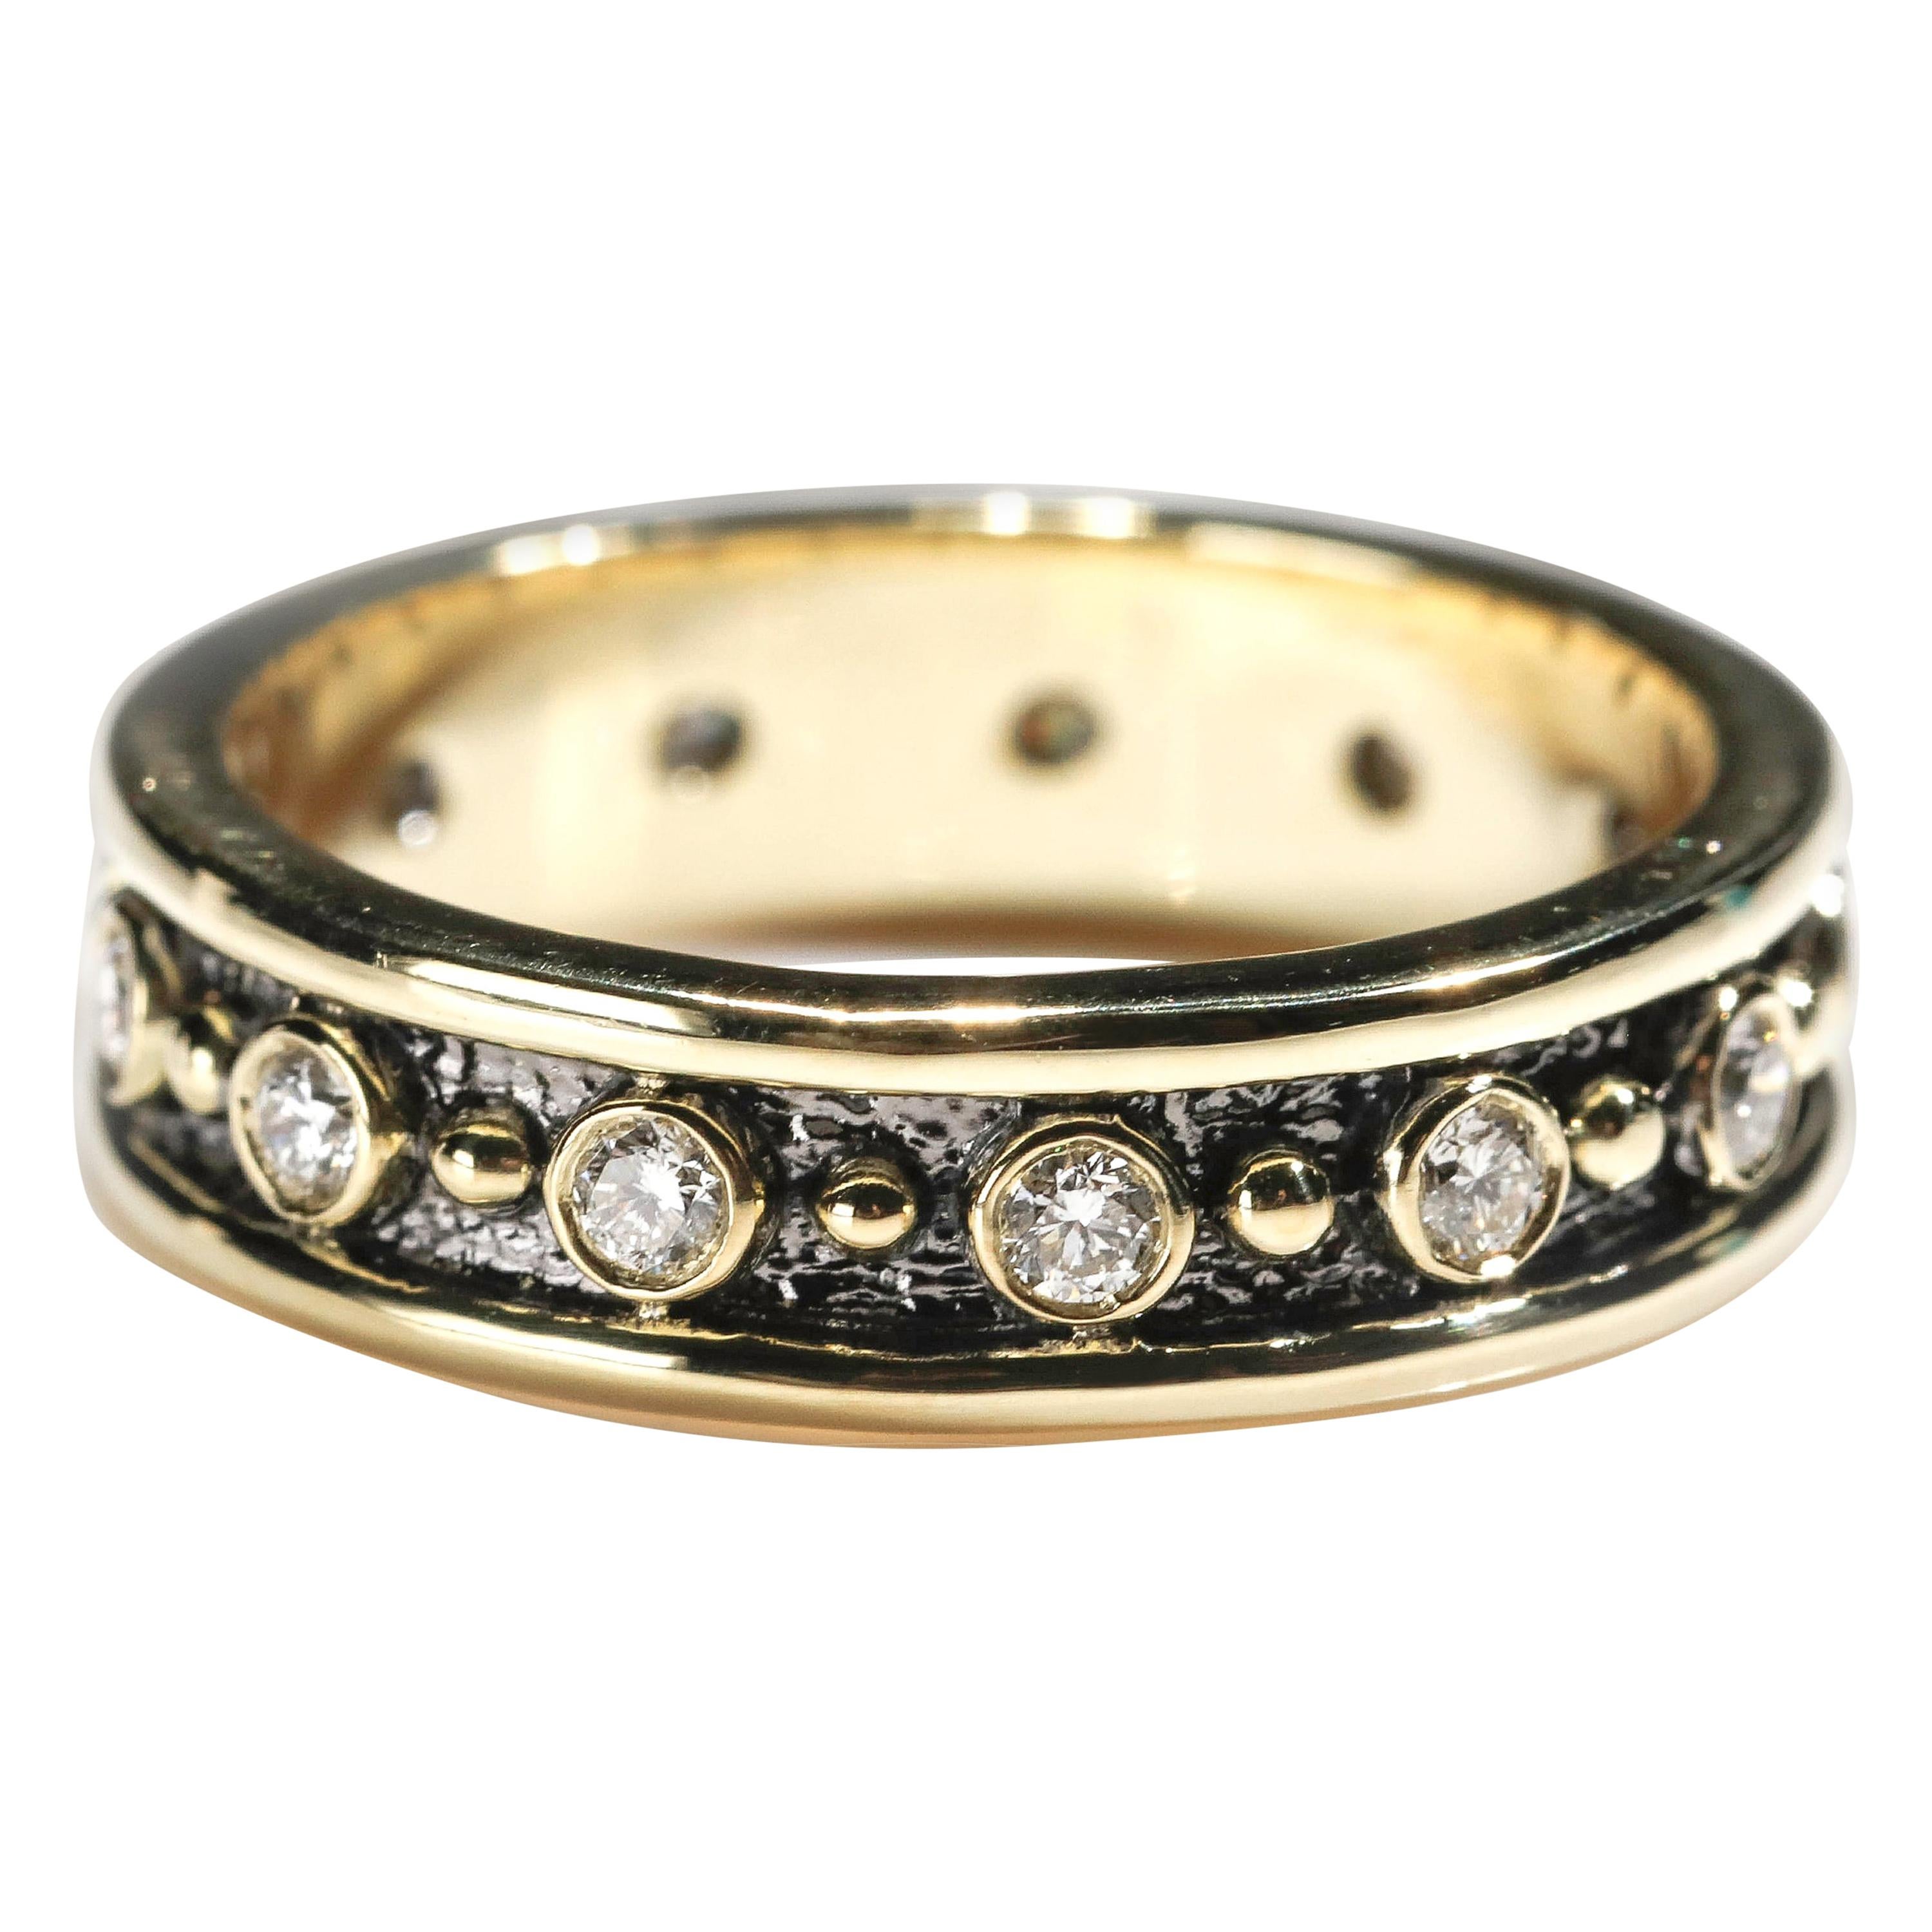 18 Karat Yellow Gold 0.80 Carat Round Cut Diamond Full Band Ring US Size 8